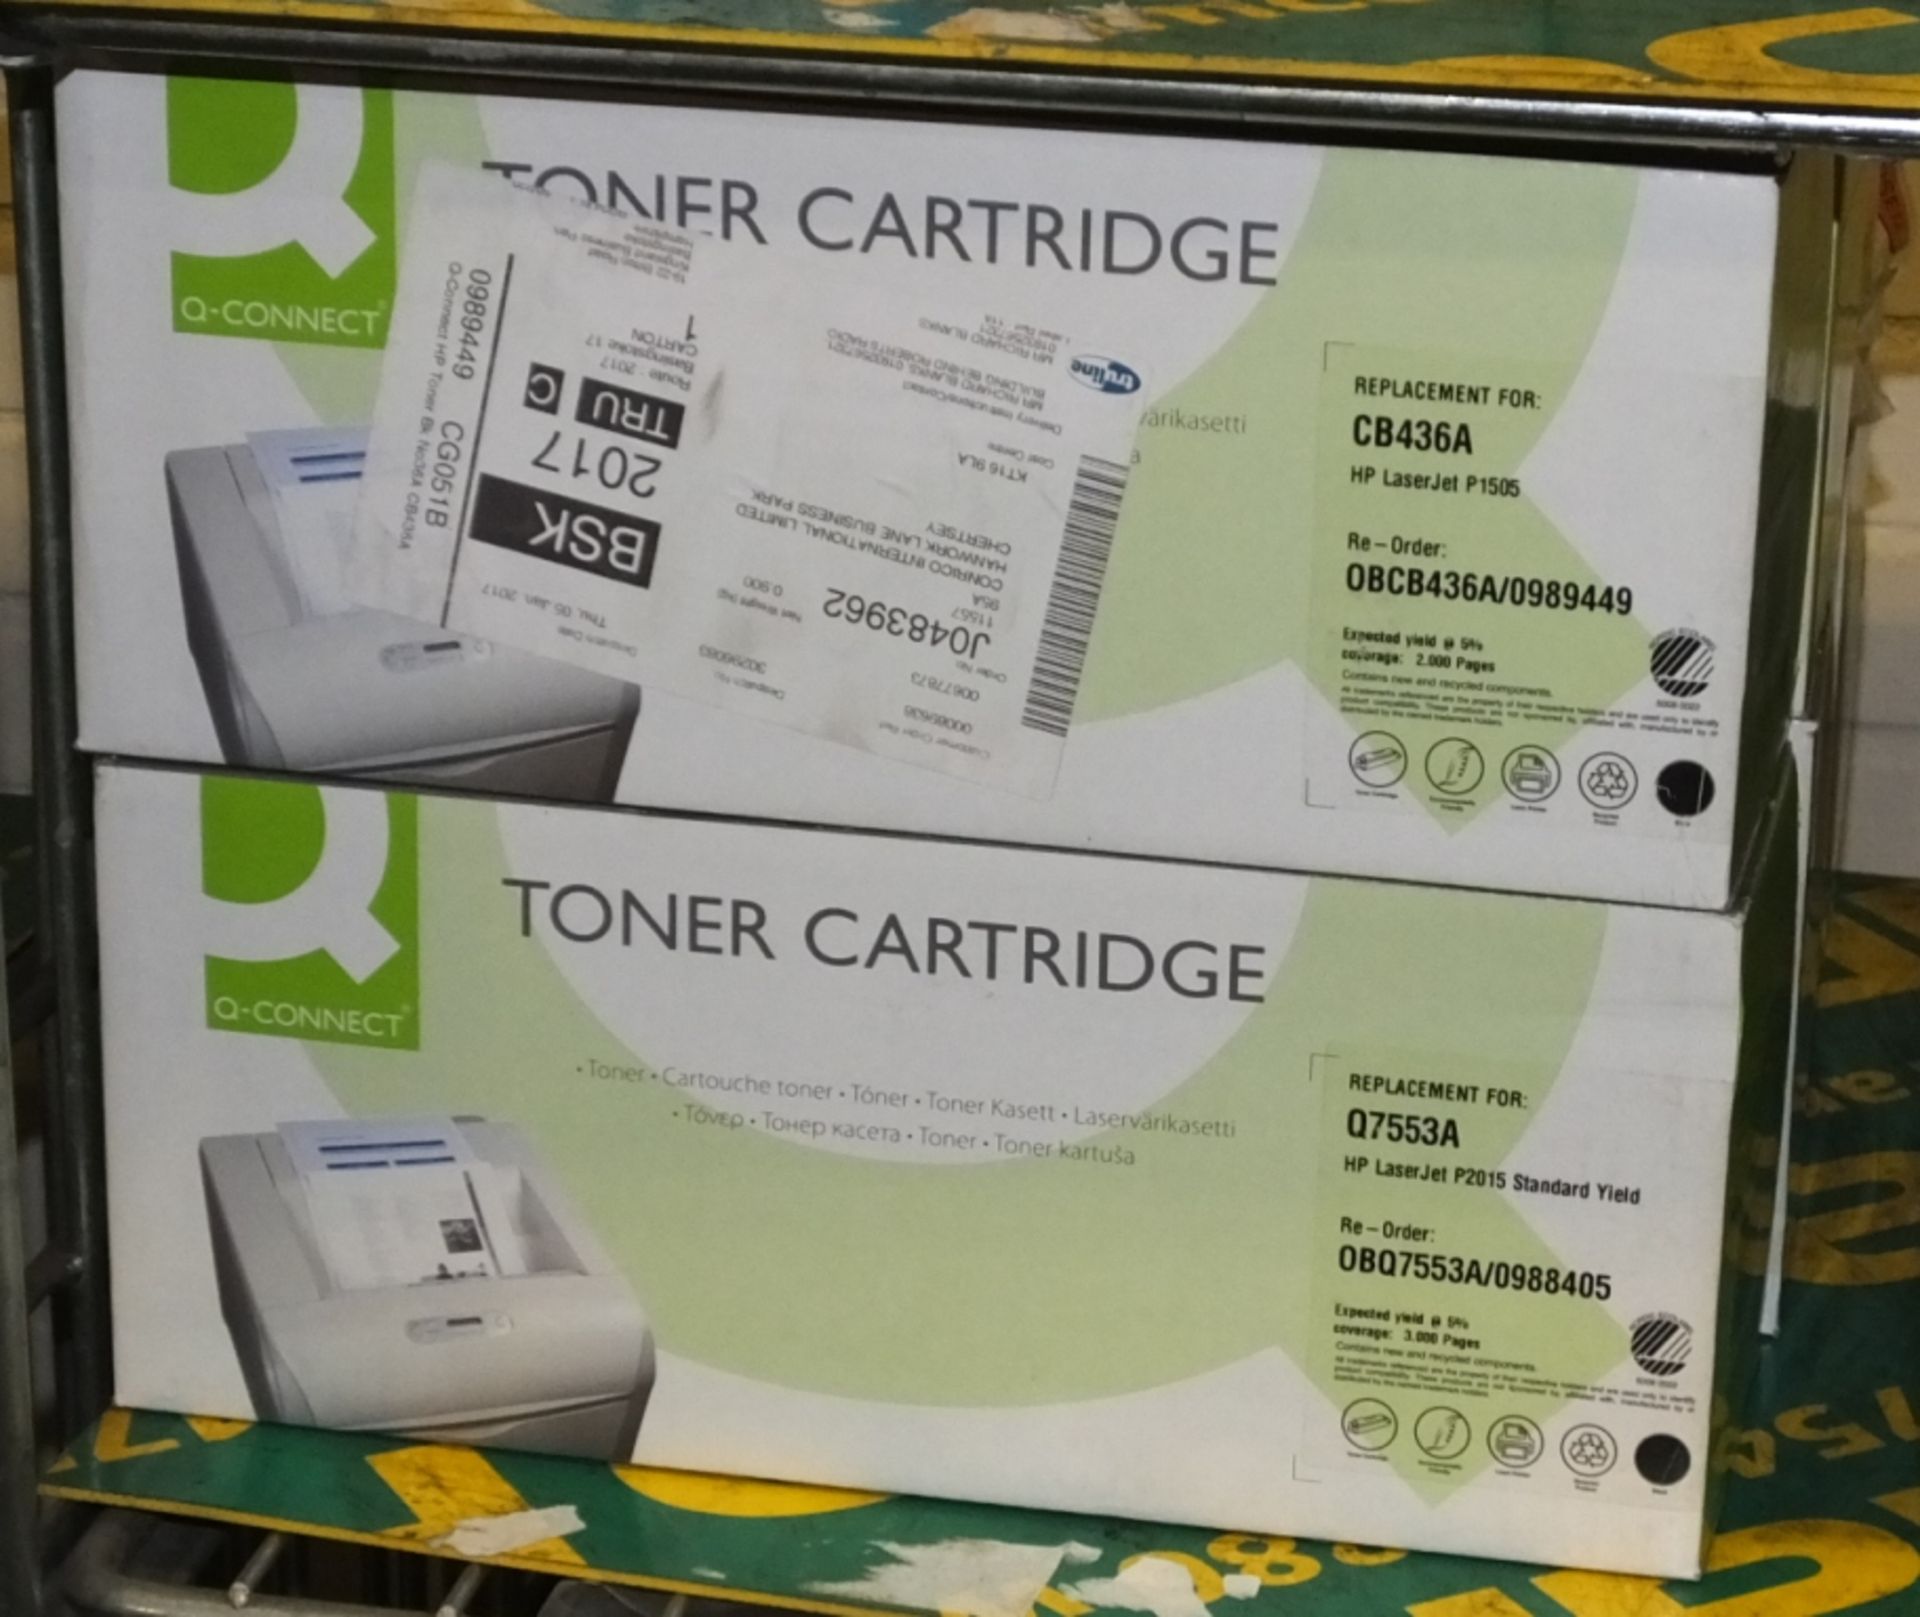 Printer Cartridges - Epson, Envisage, Q-Connect - Image 5 of 5